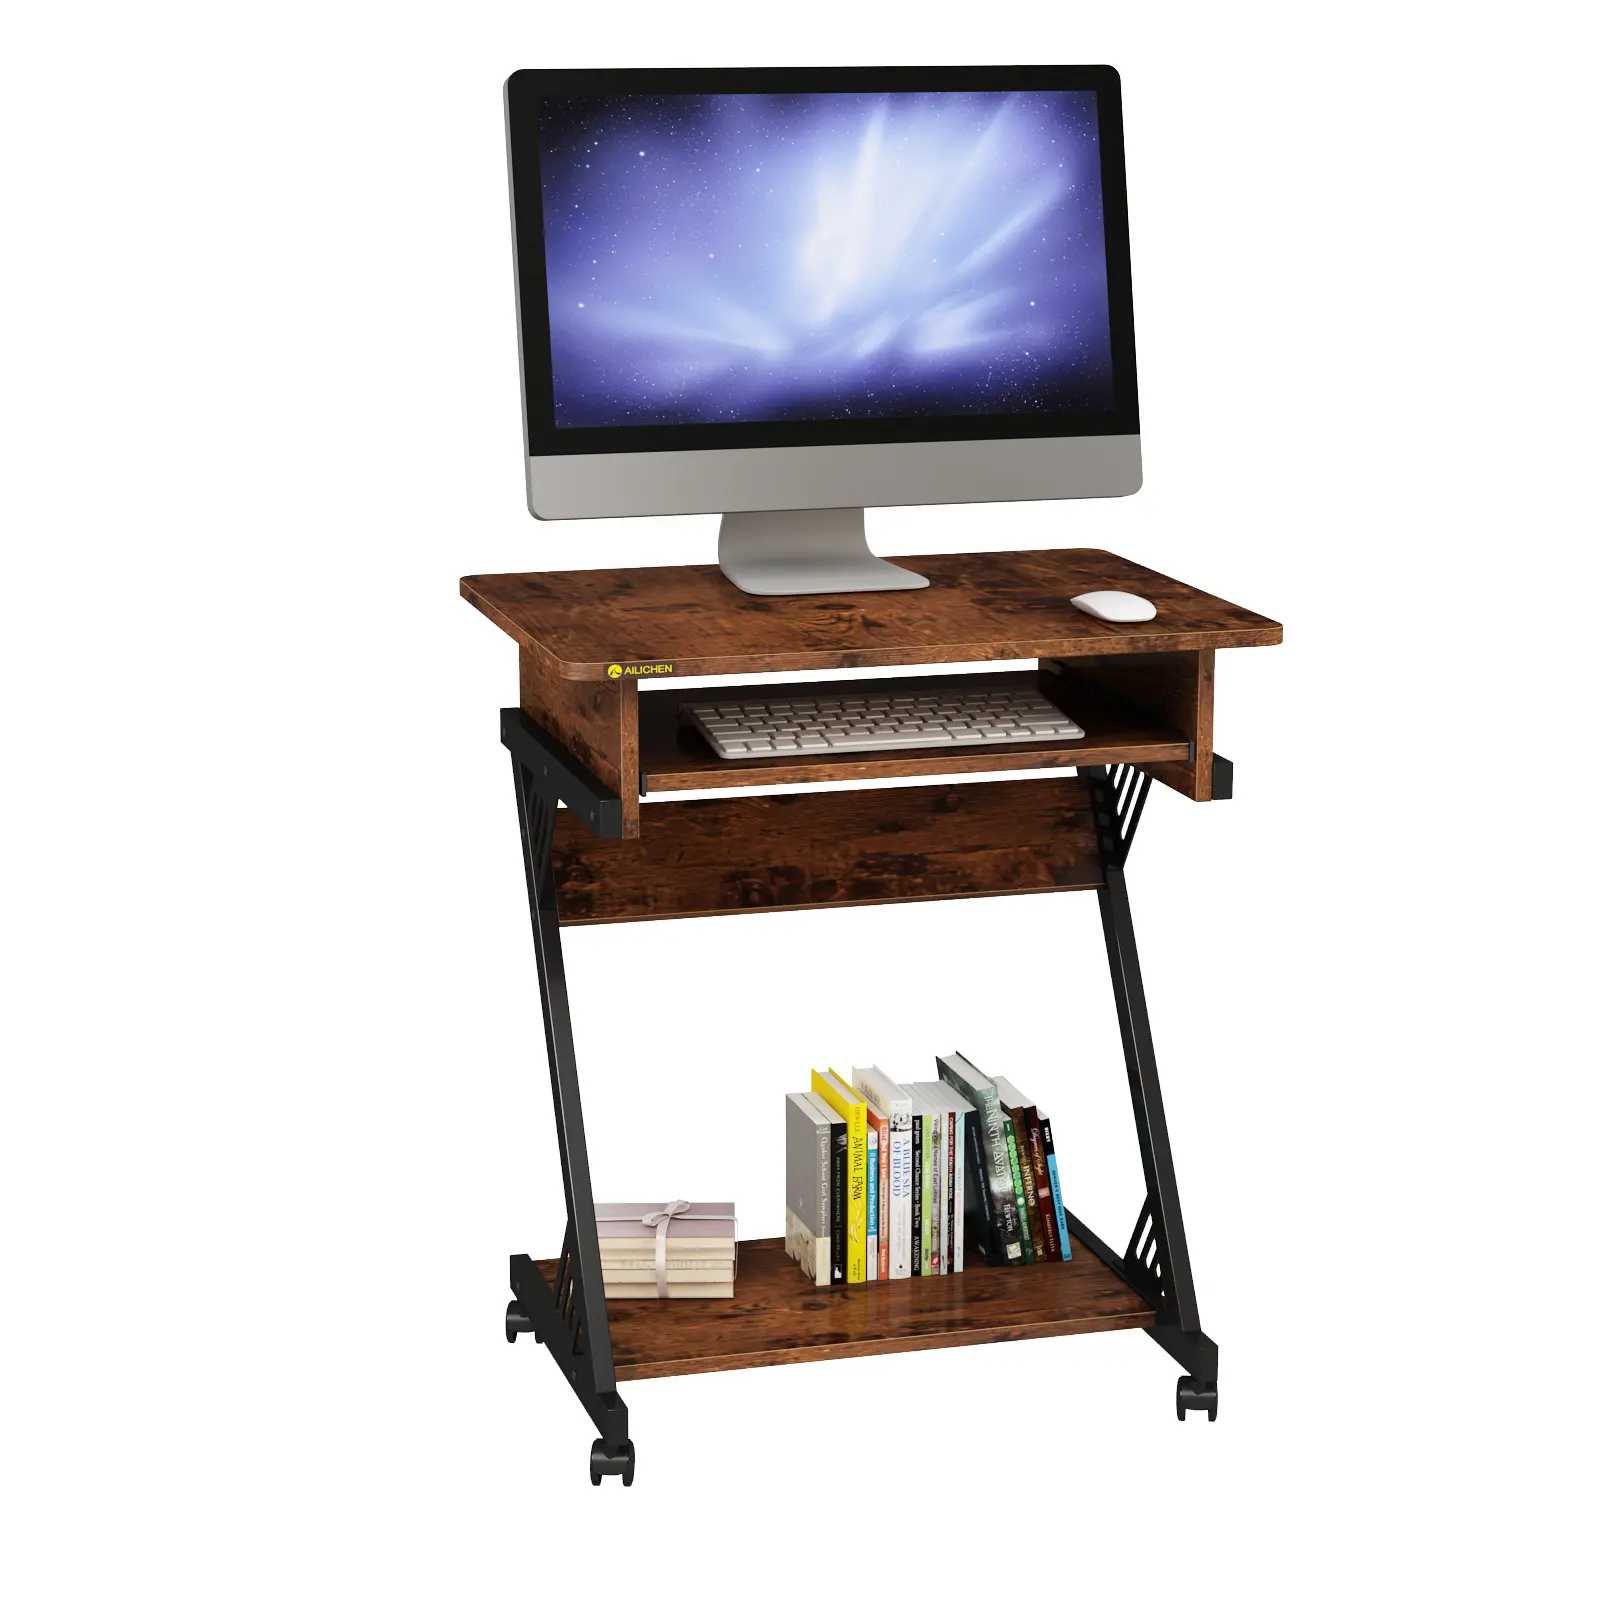 YQ FOREVER bureau étudiant Table d'ordinateur industriel Antique en bois bureau d'étude pour la maison bureau